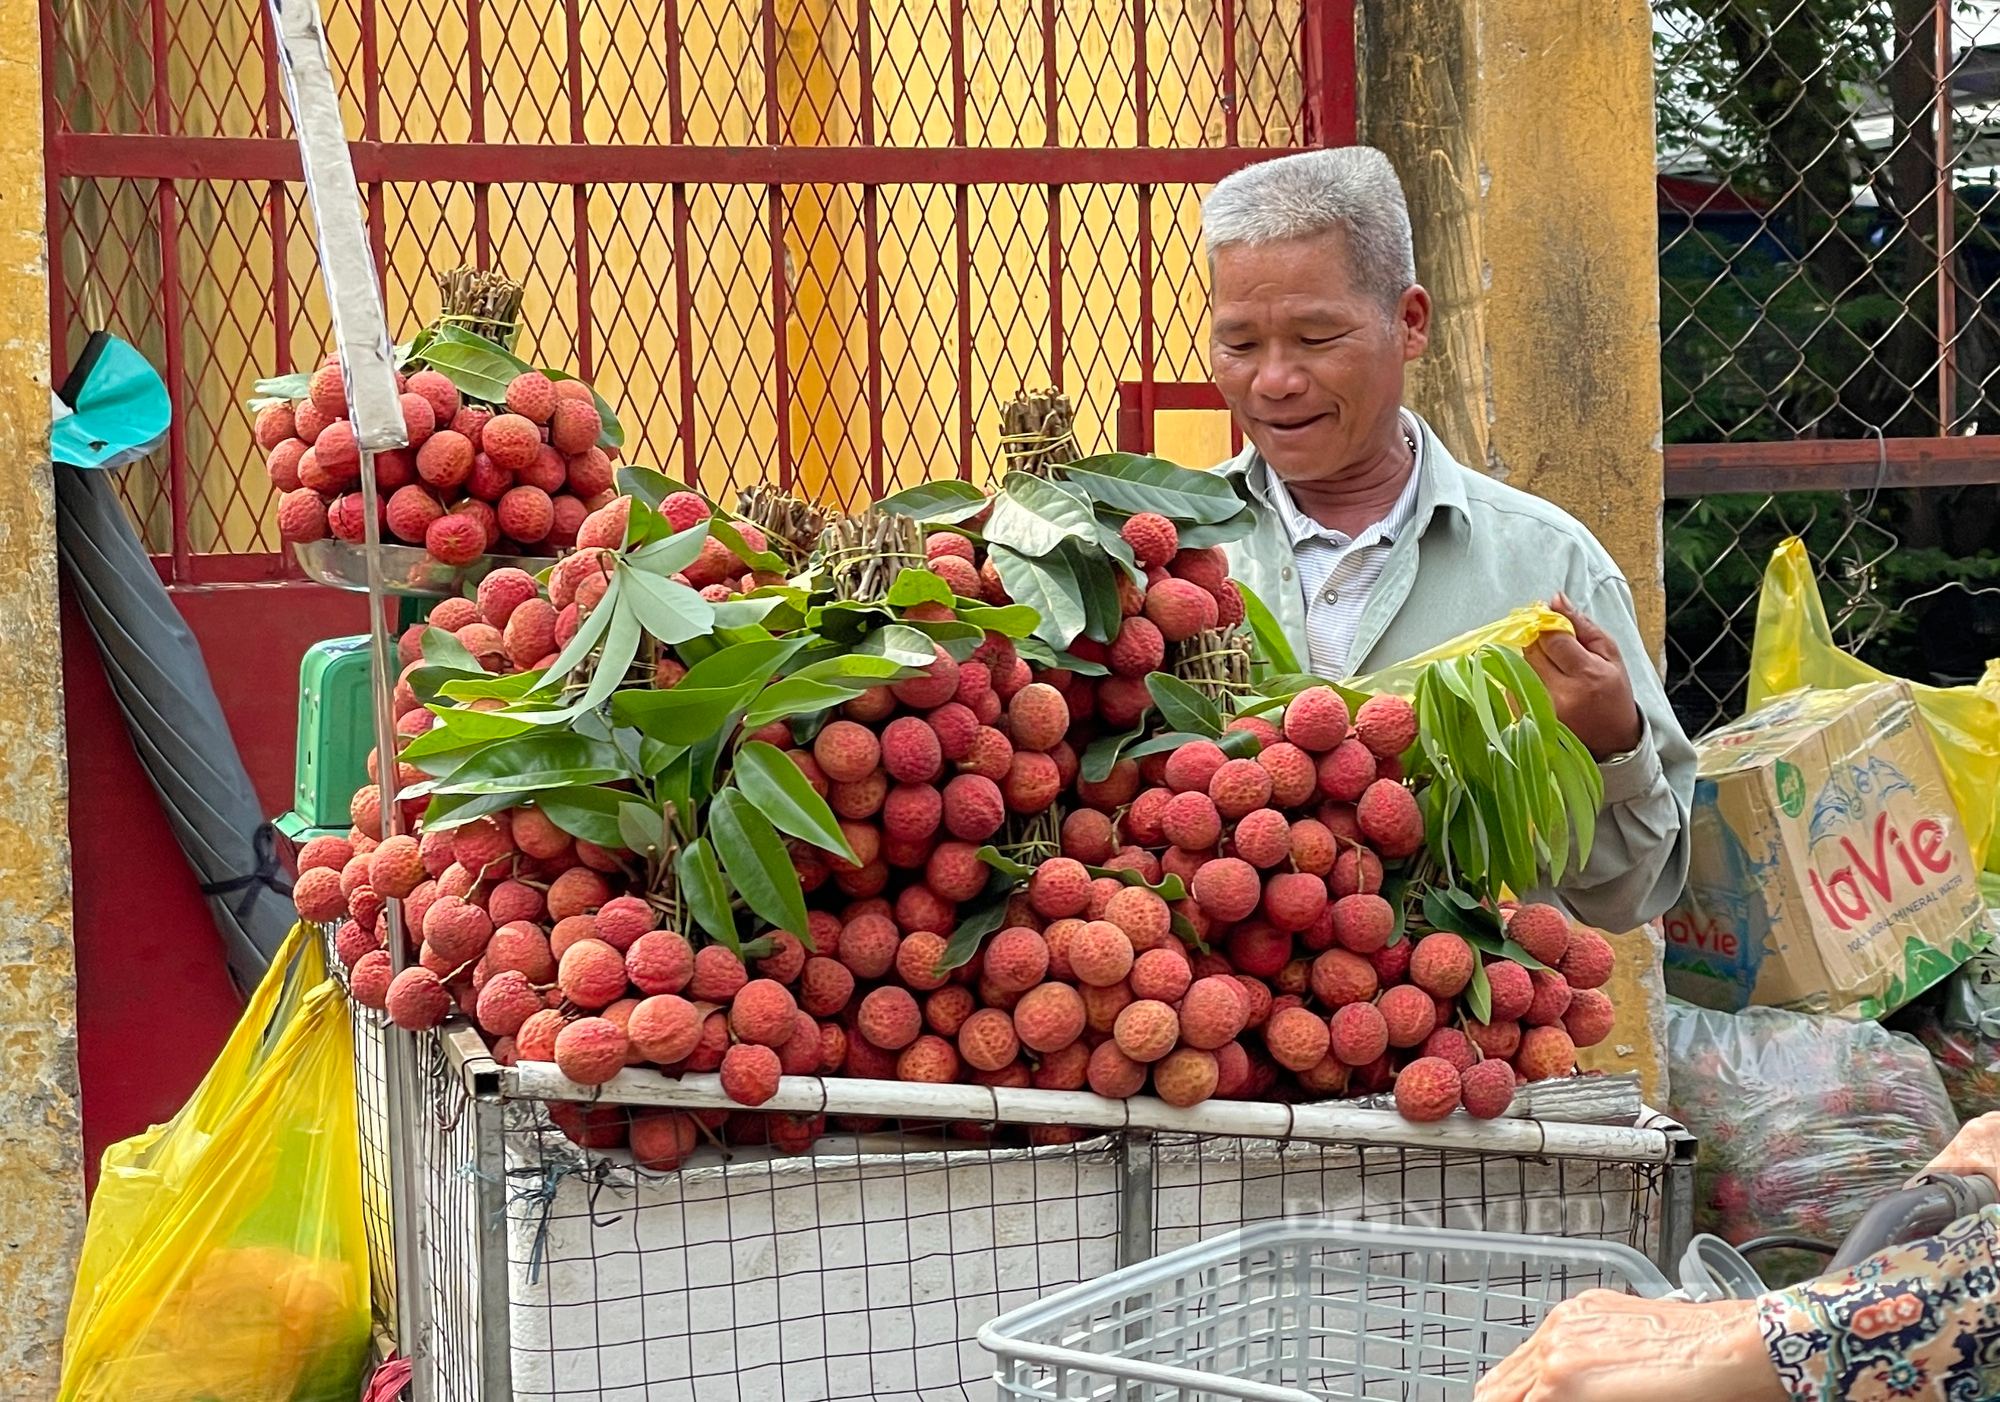 Vải thiều nhuộm đỏ chợ Sài Gòn, giá chỉ 30.000 đồng/kg - Ảnh 3.